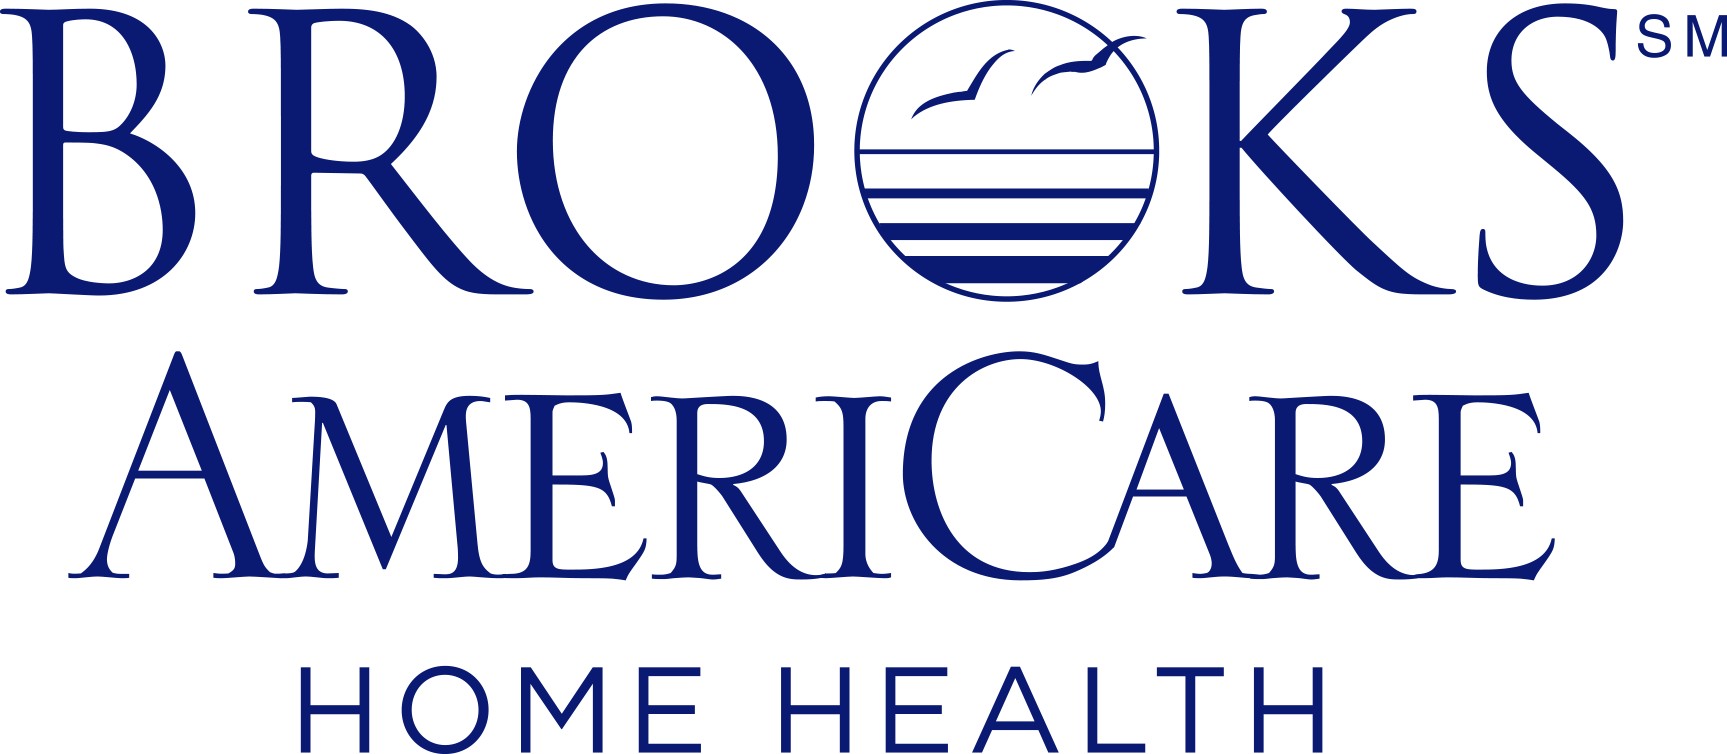 Brooks Americare Home Health Linkedin